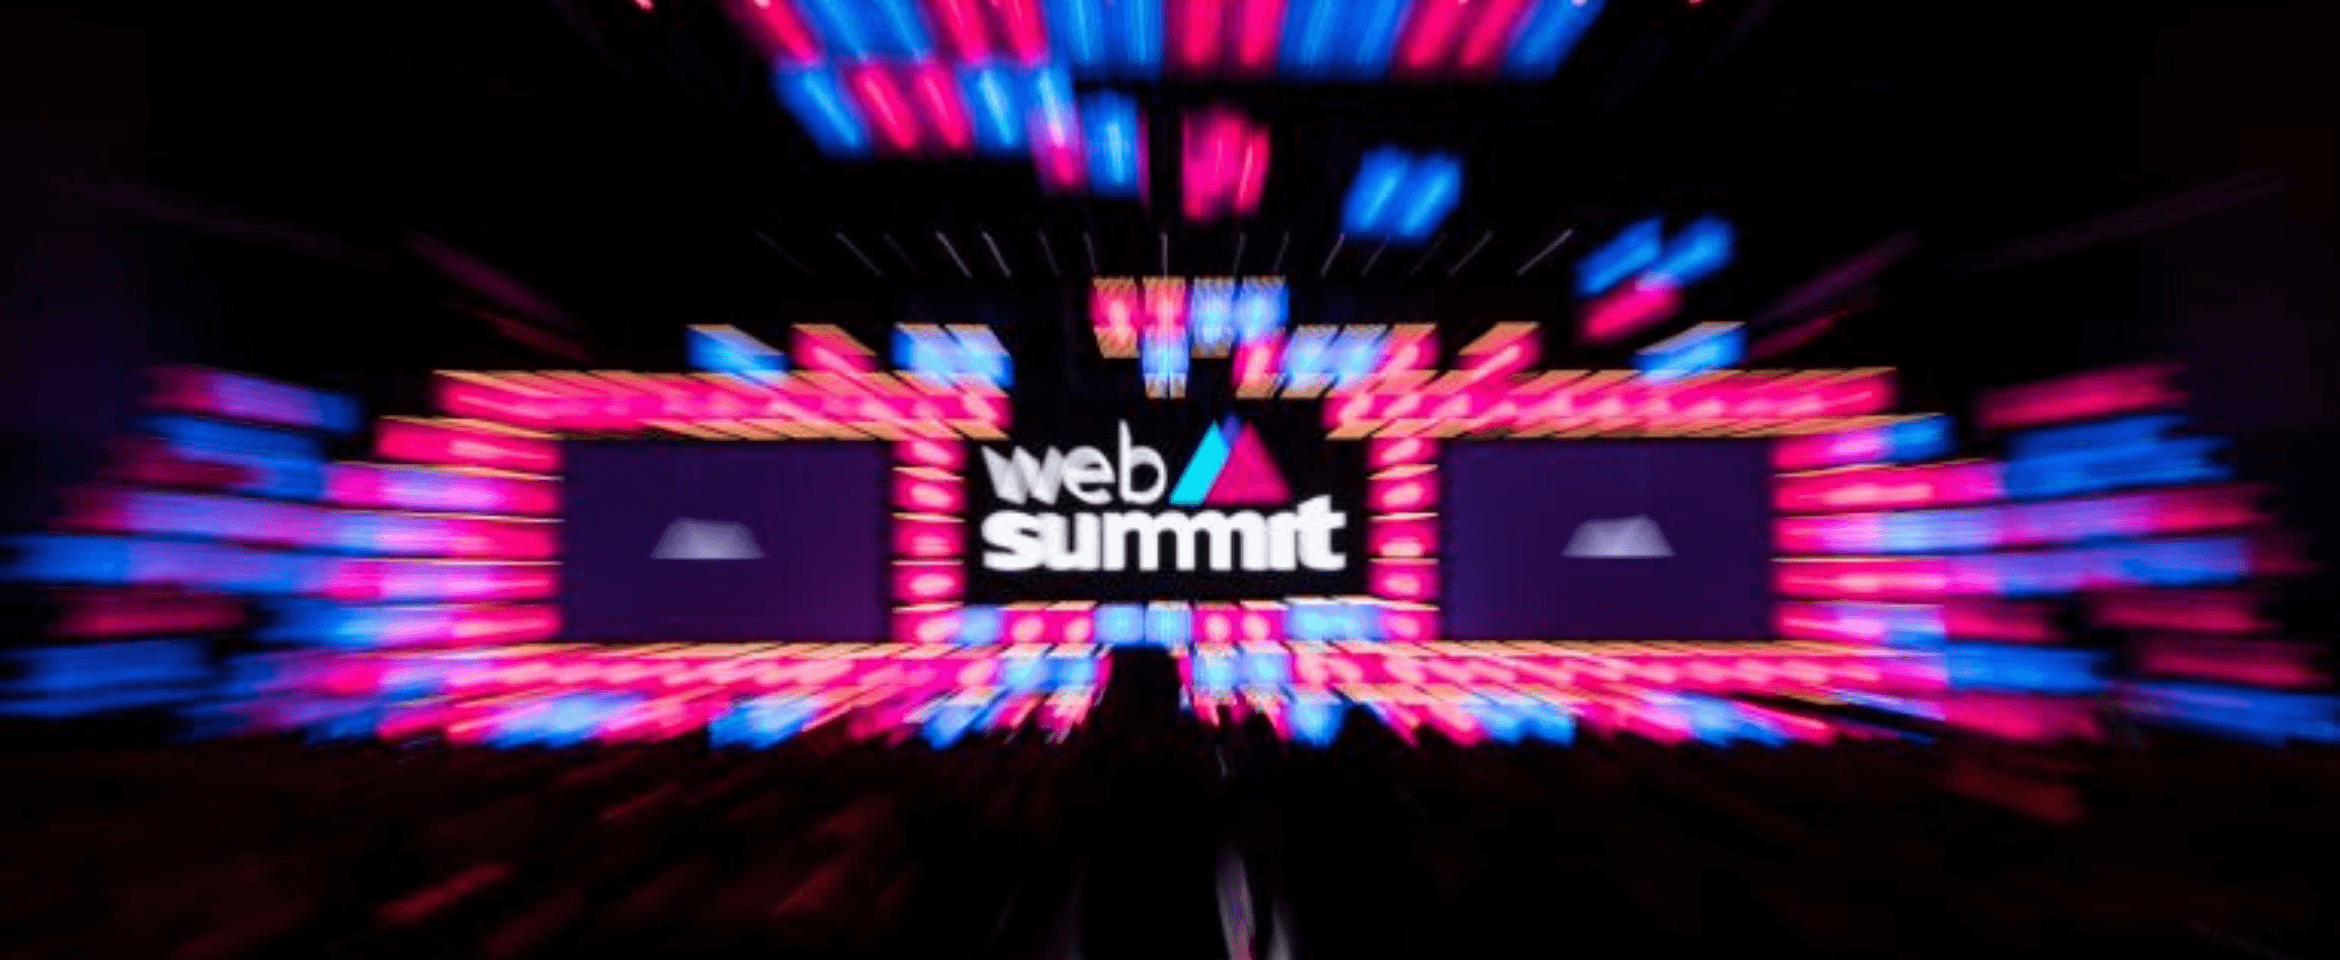 Como gerar leads durante a Web Summit 2019?